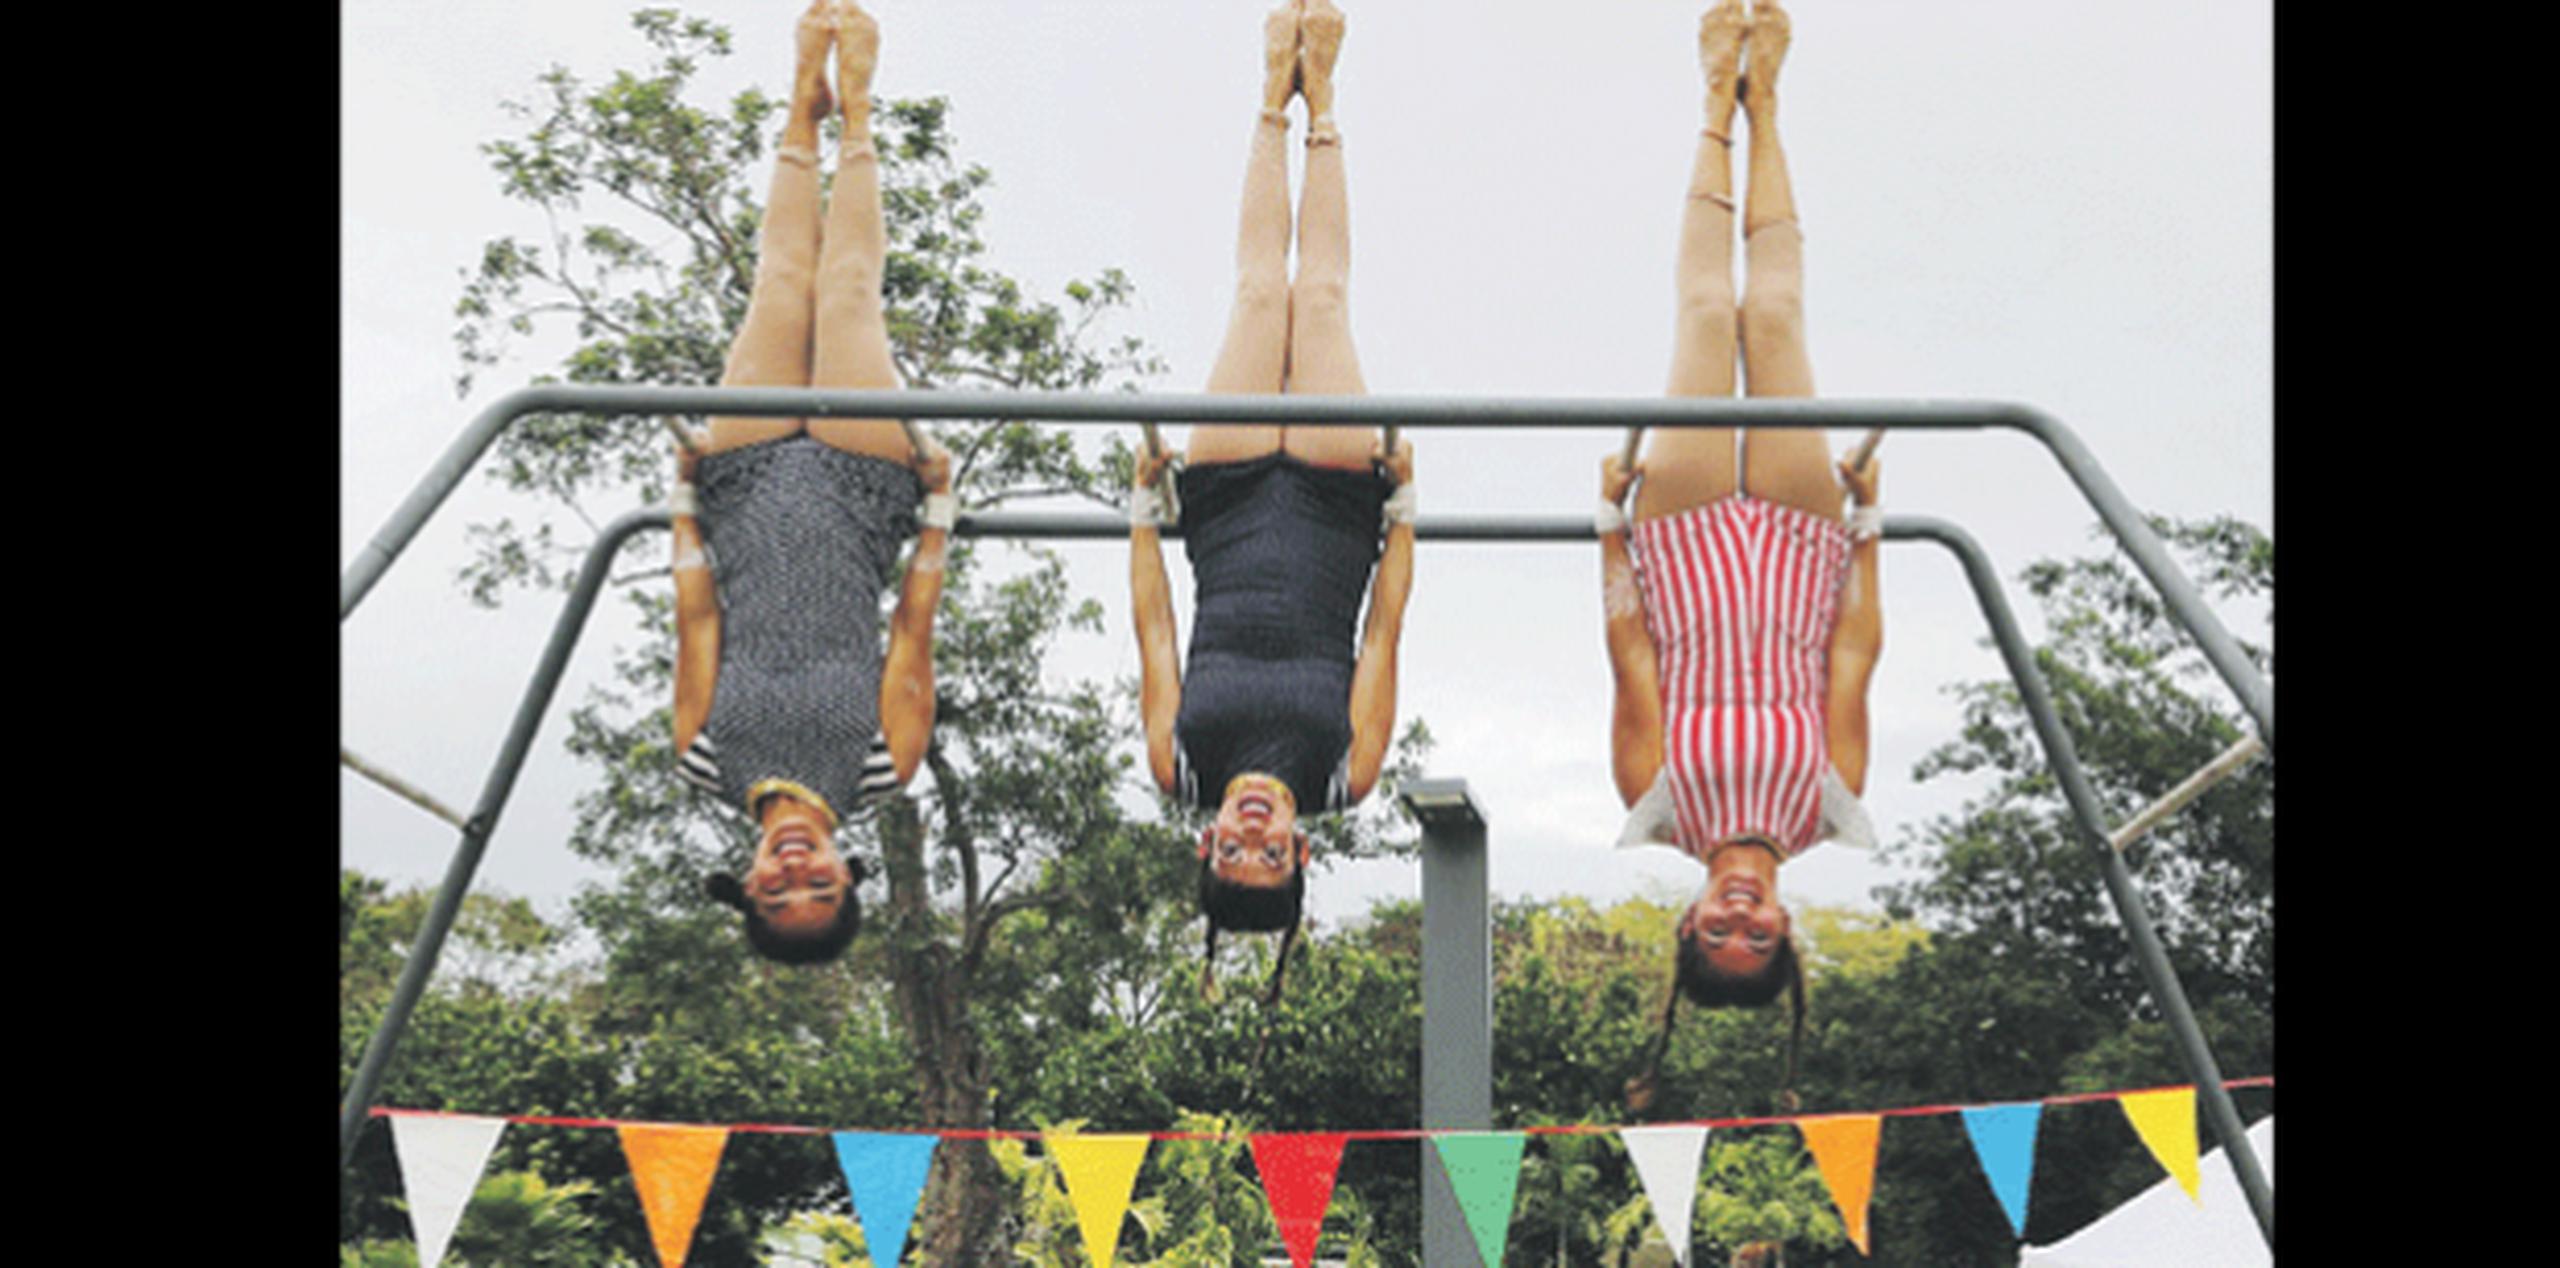 El domingo, desde las 4:00 p.m. en el parque Luis Muñoz Marín, podrás disfrutar con tus niños de las diversiones que ofrece el Circo Piquiniqui. (Archivo)